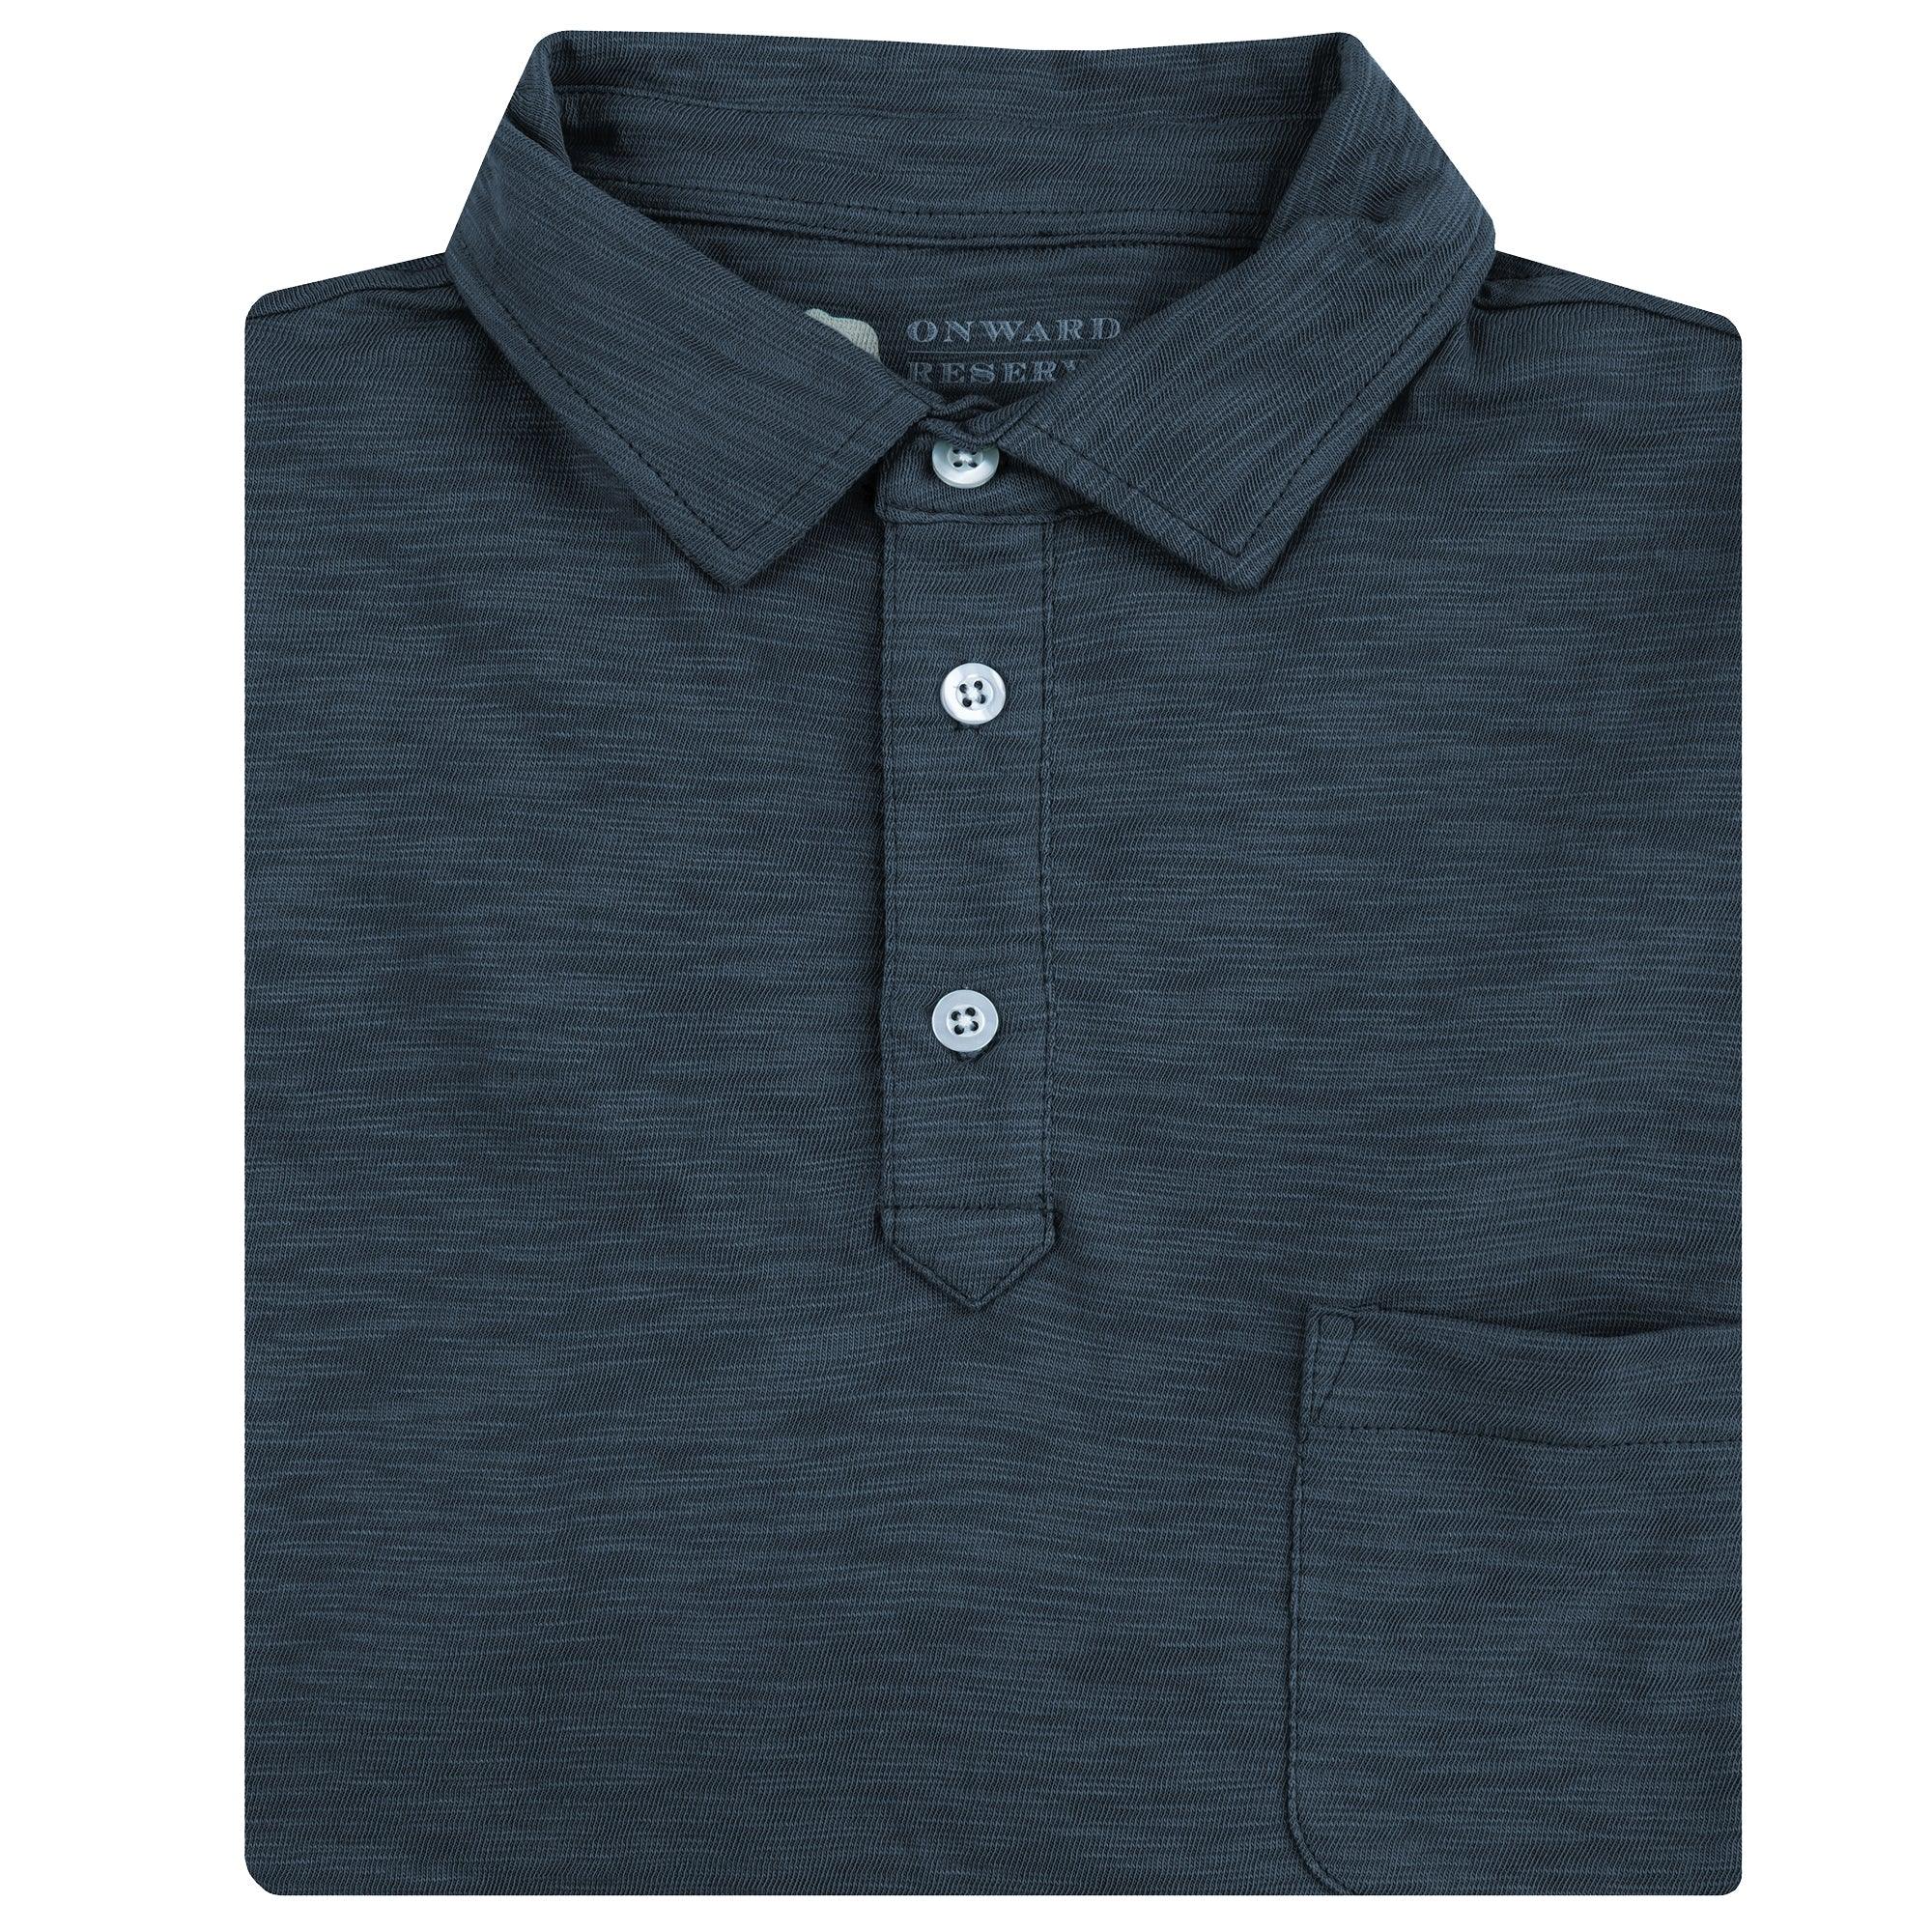 AWB Embroidered Polo Shirt – Sunwheel Shop